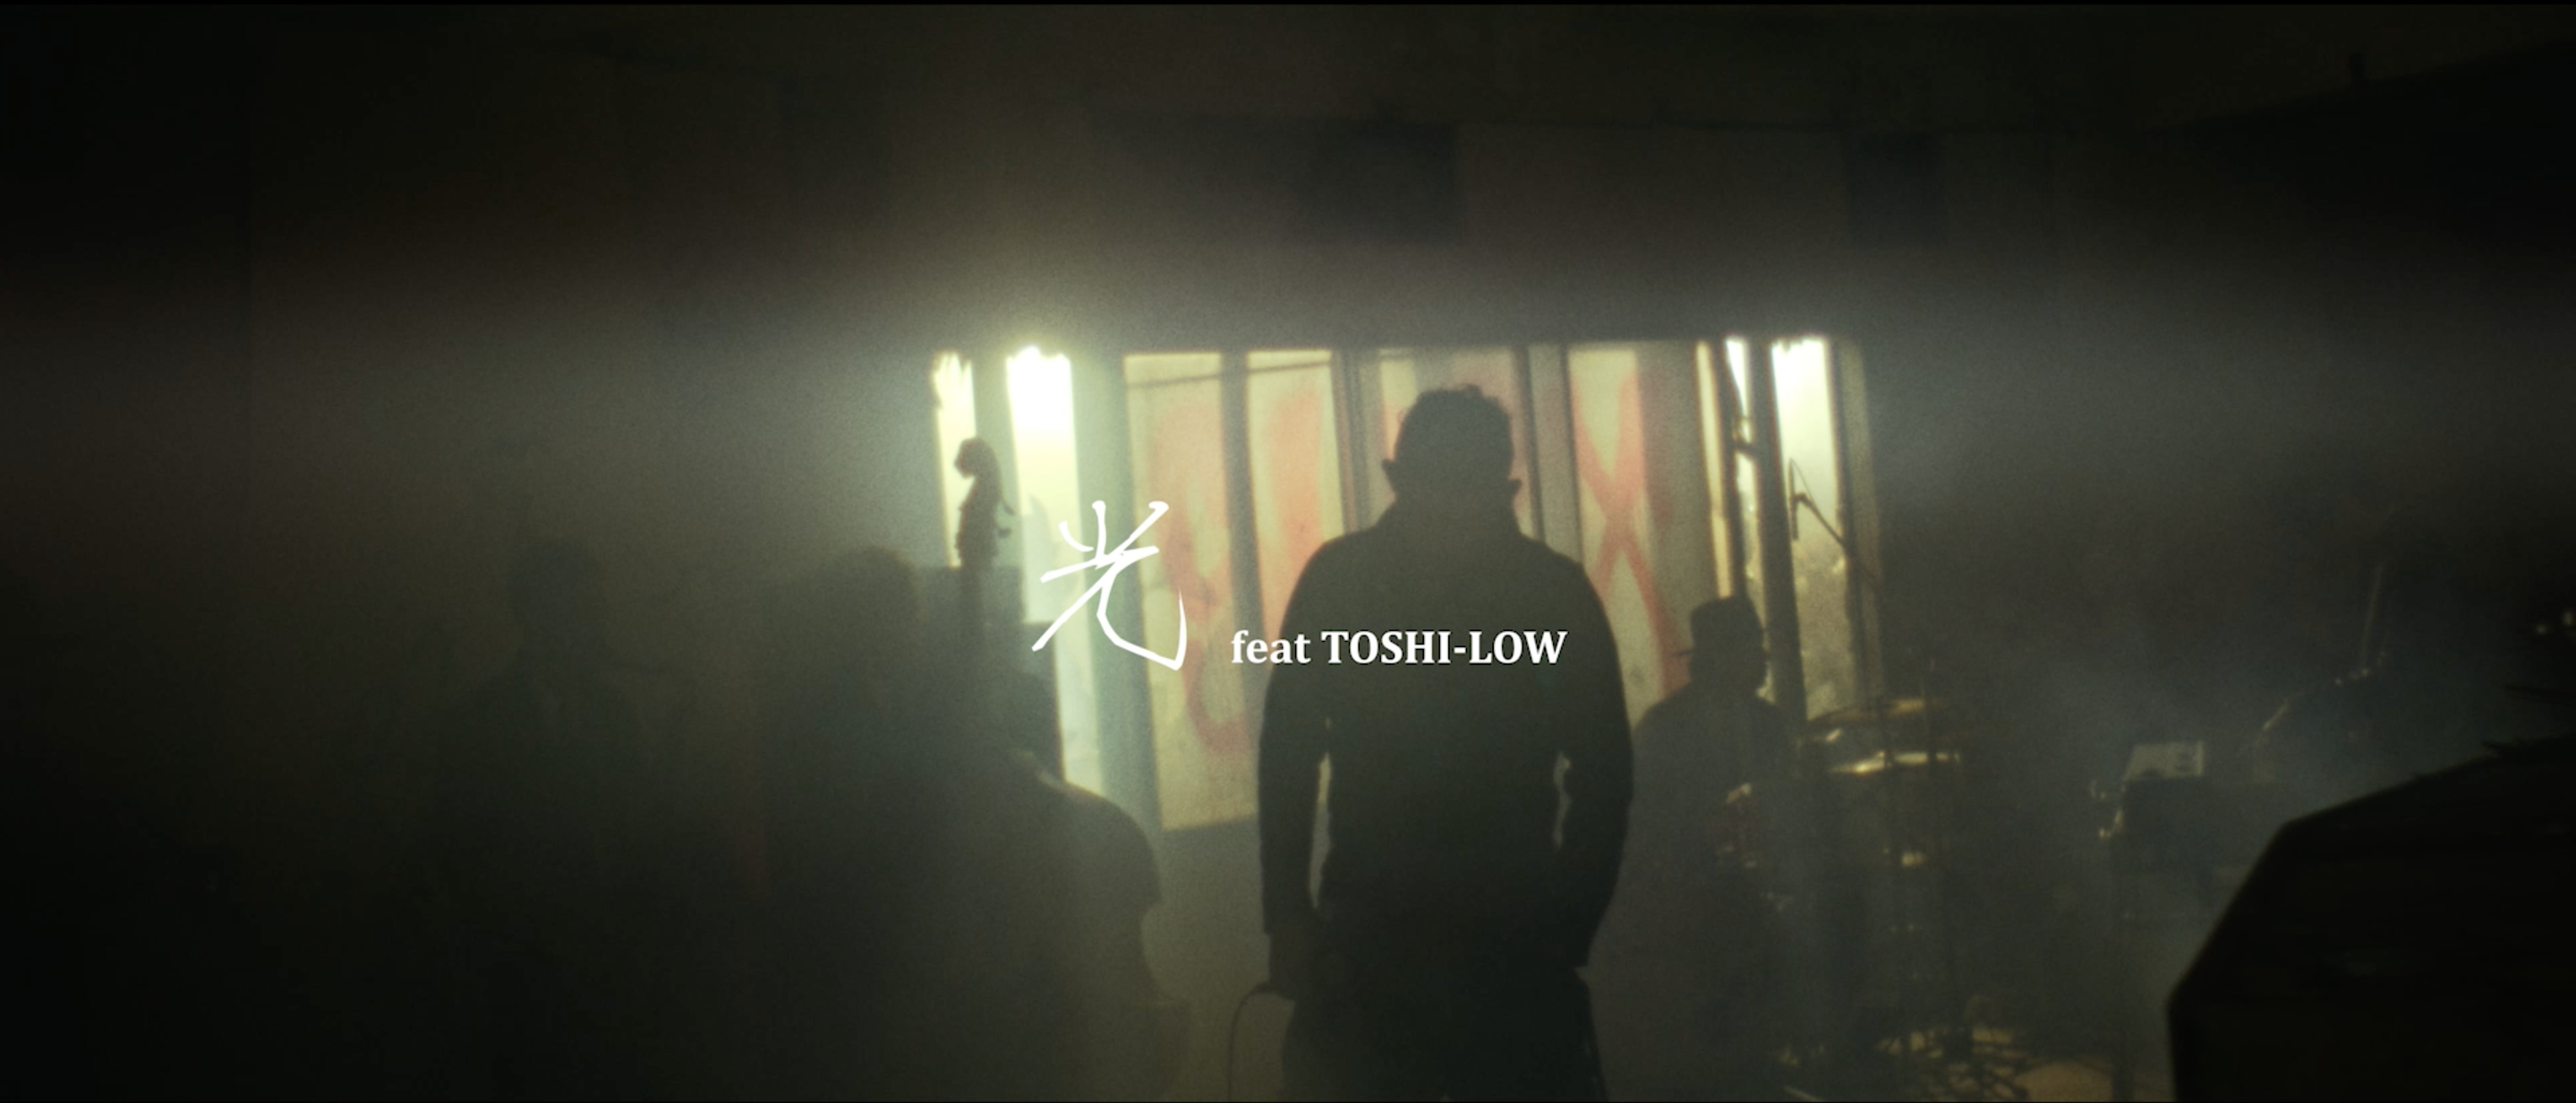 「光 feat. TOSHI-LOW」ミュージックビデオサムネイル